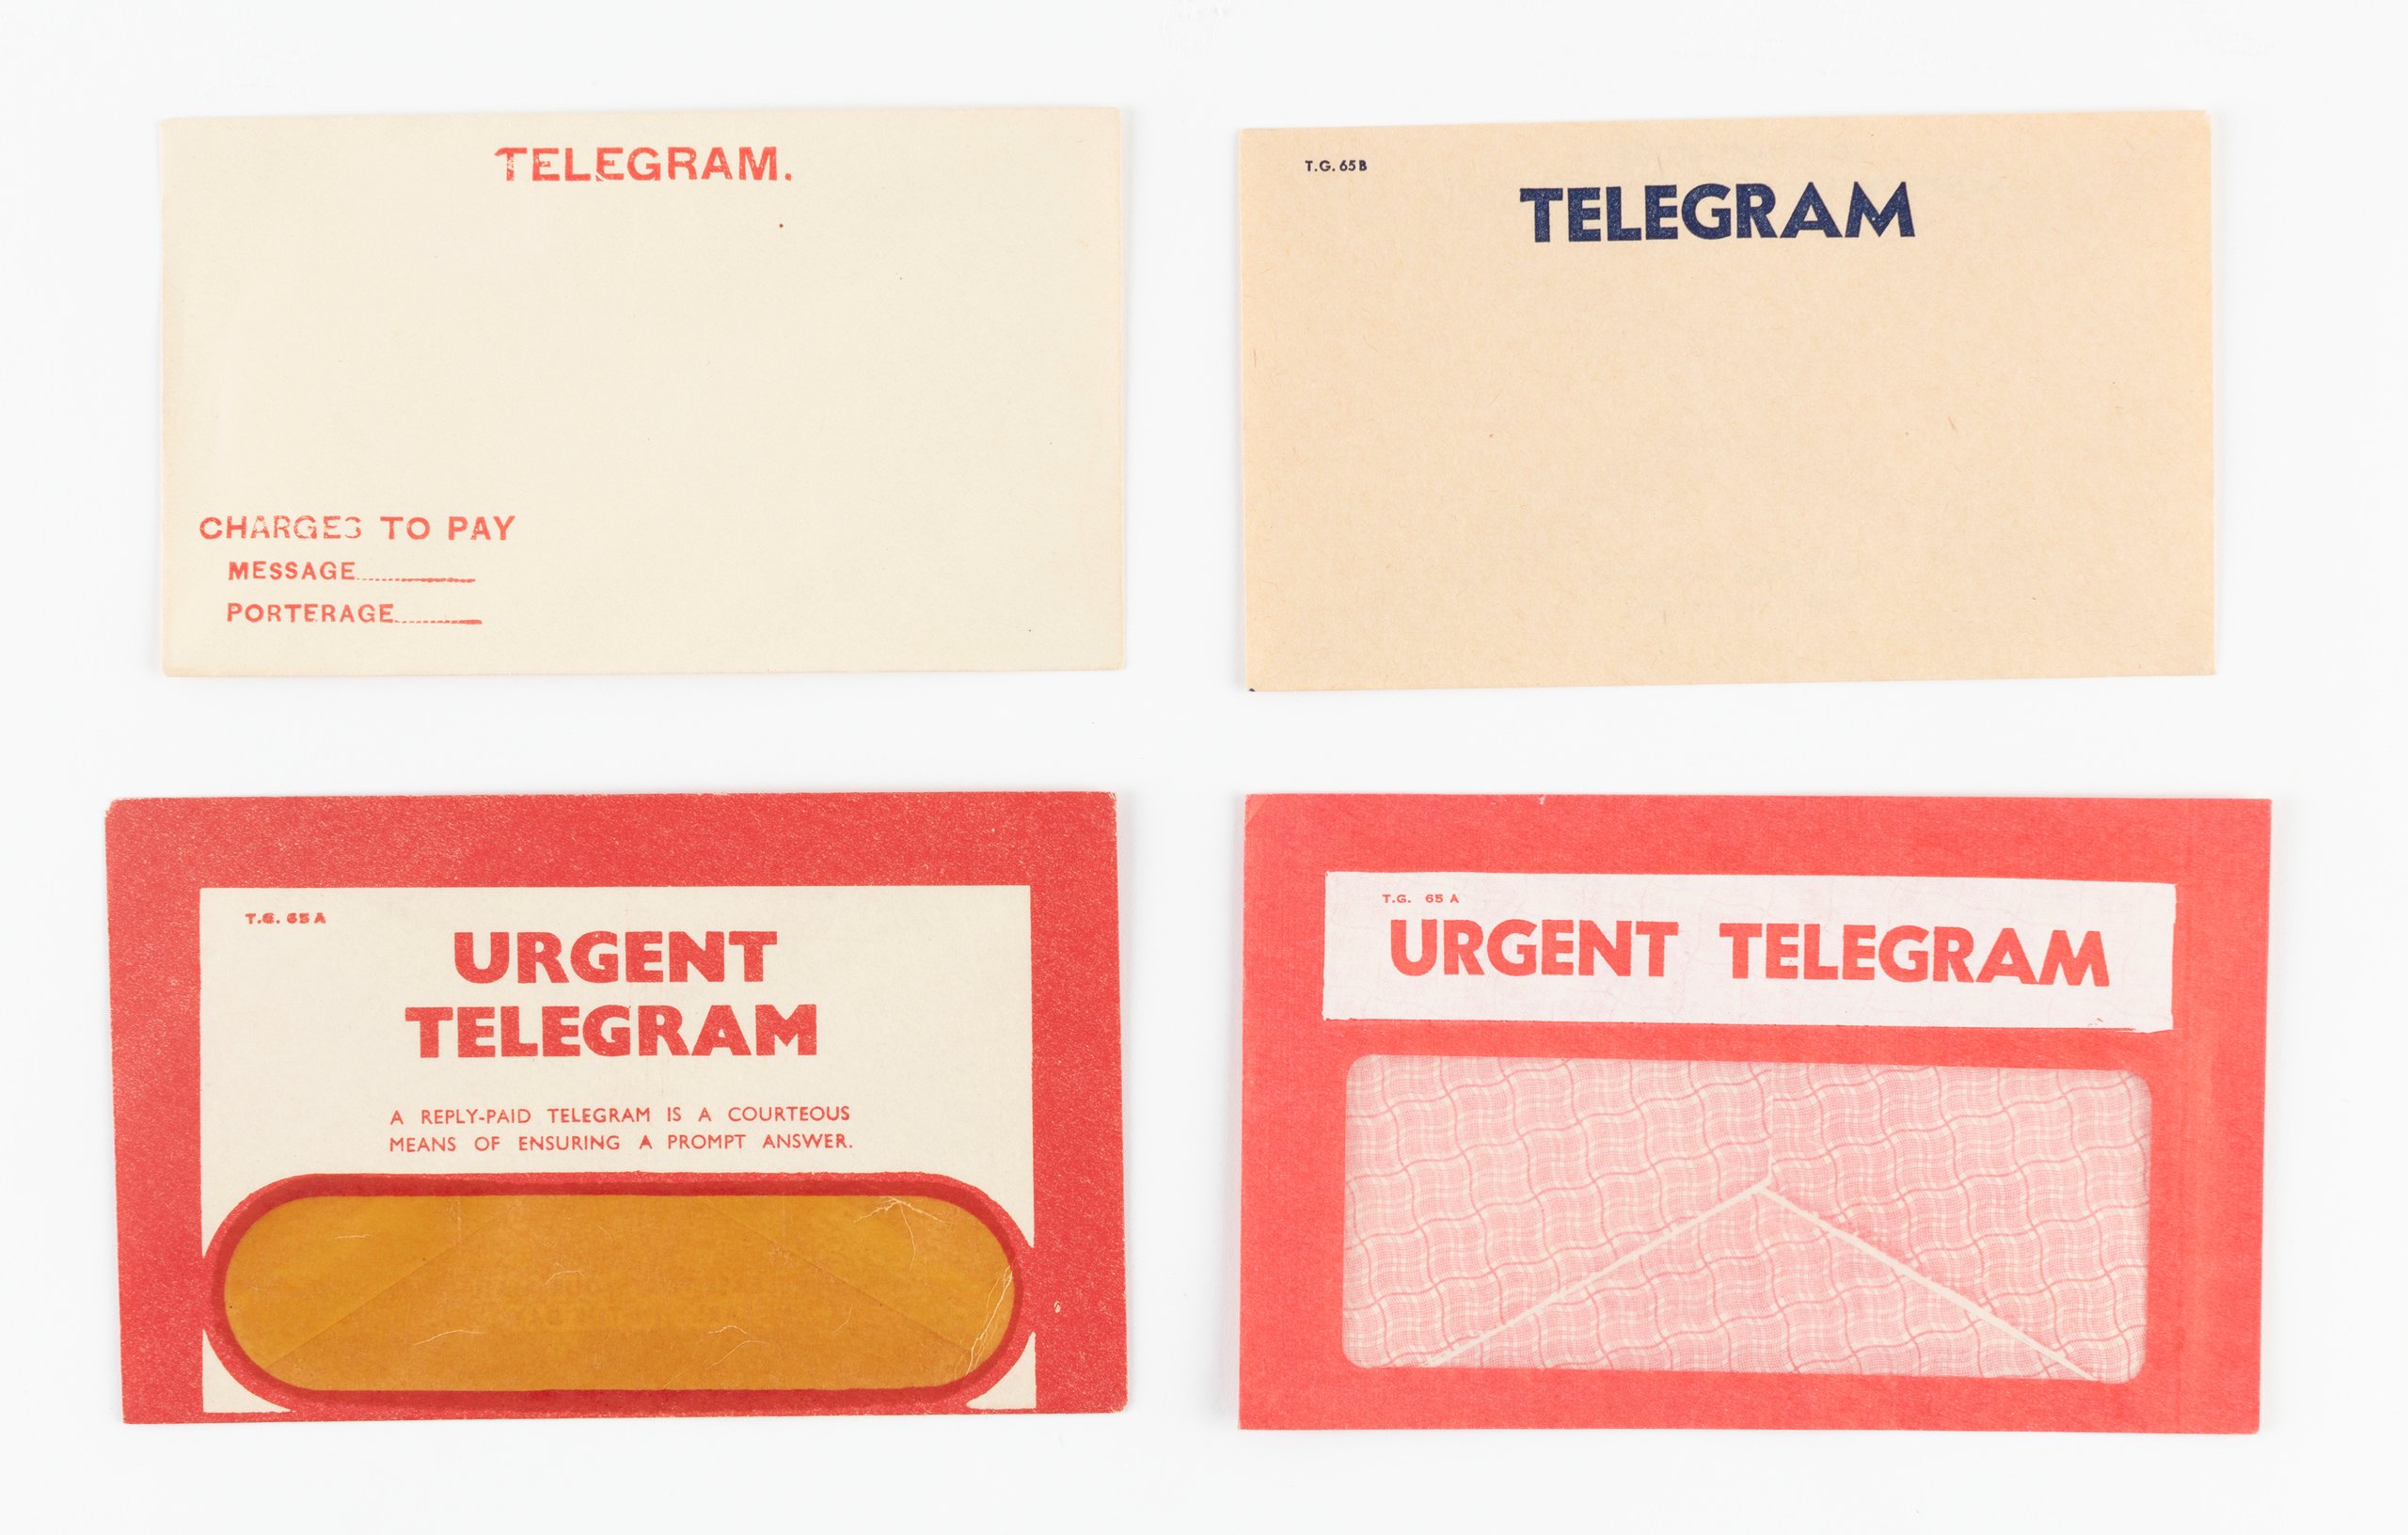 Telegram envelopes by Australian Post Office